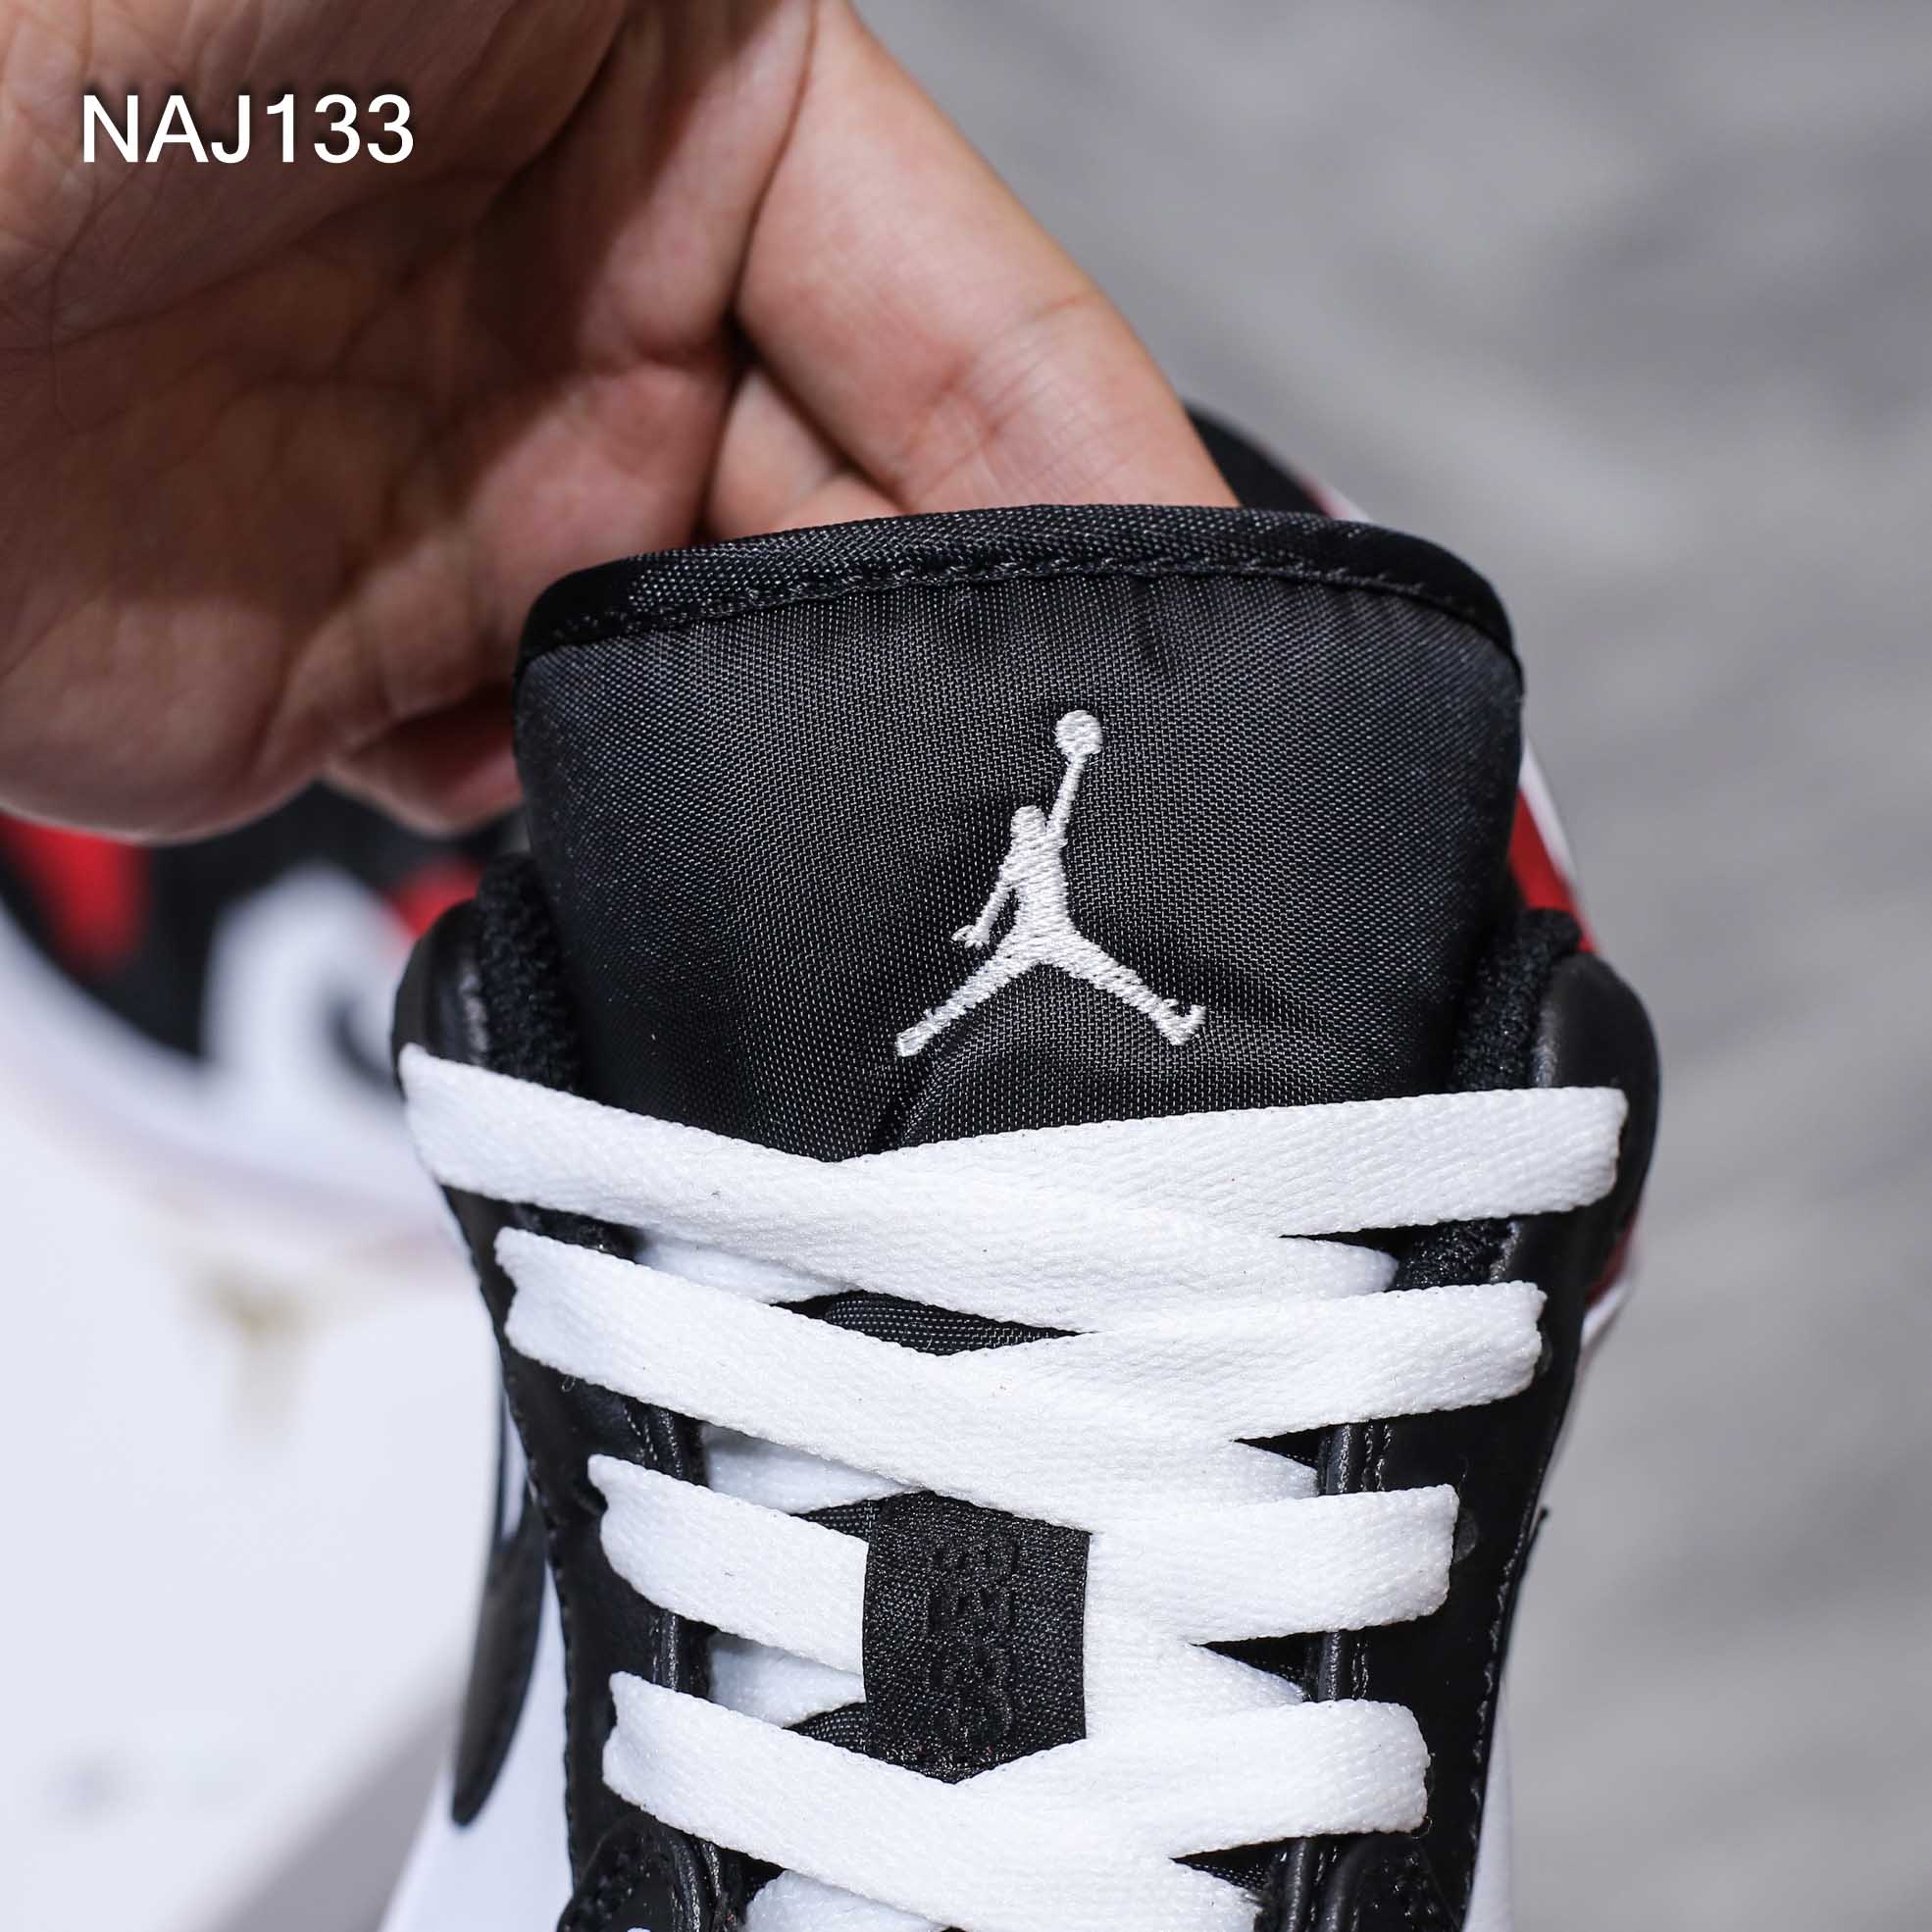 Giày Nike Air Jordan 1 Low ‘Bred Toe’